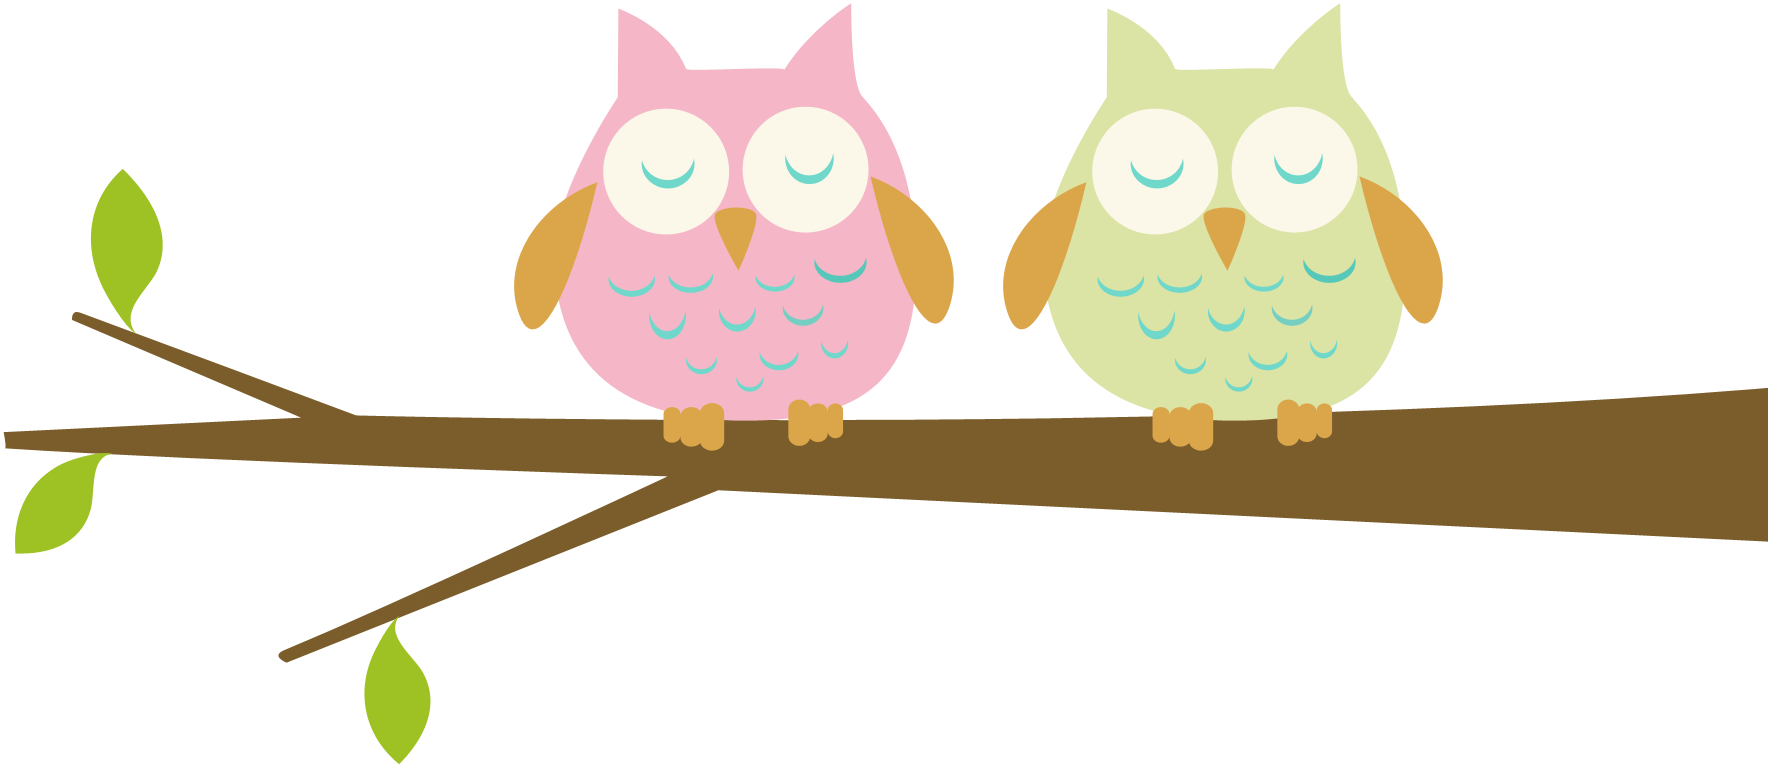 kindergarten clipart owl